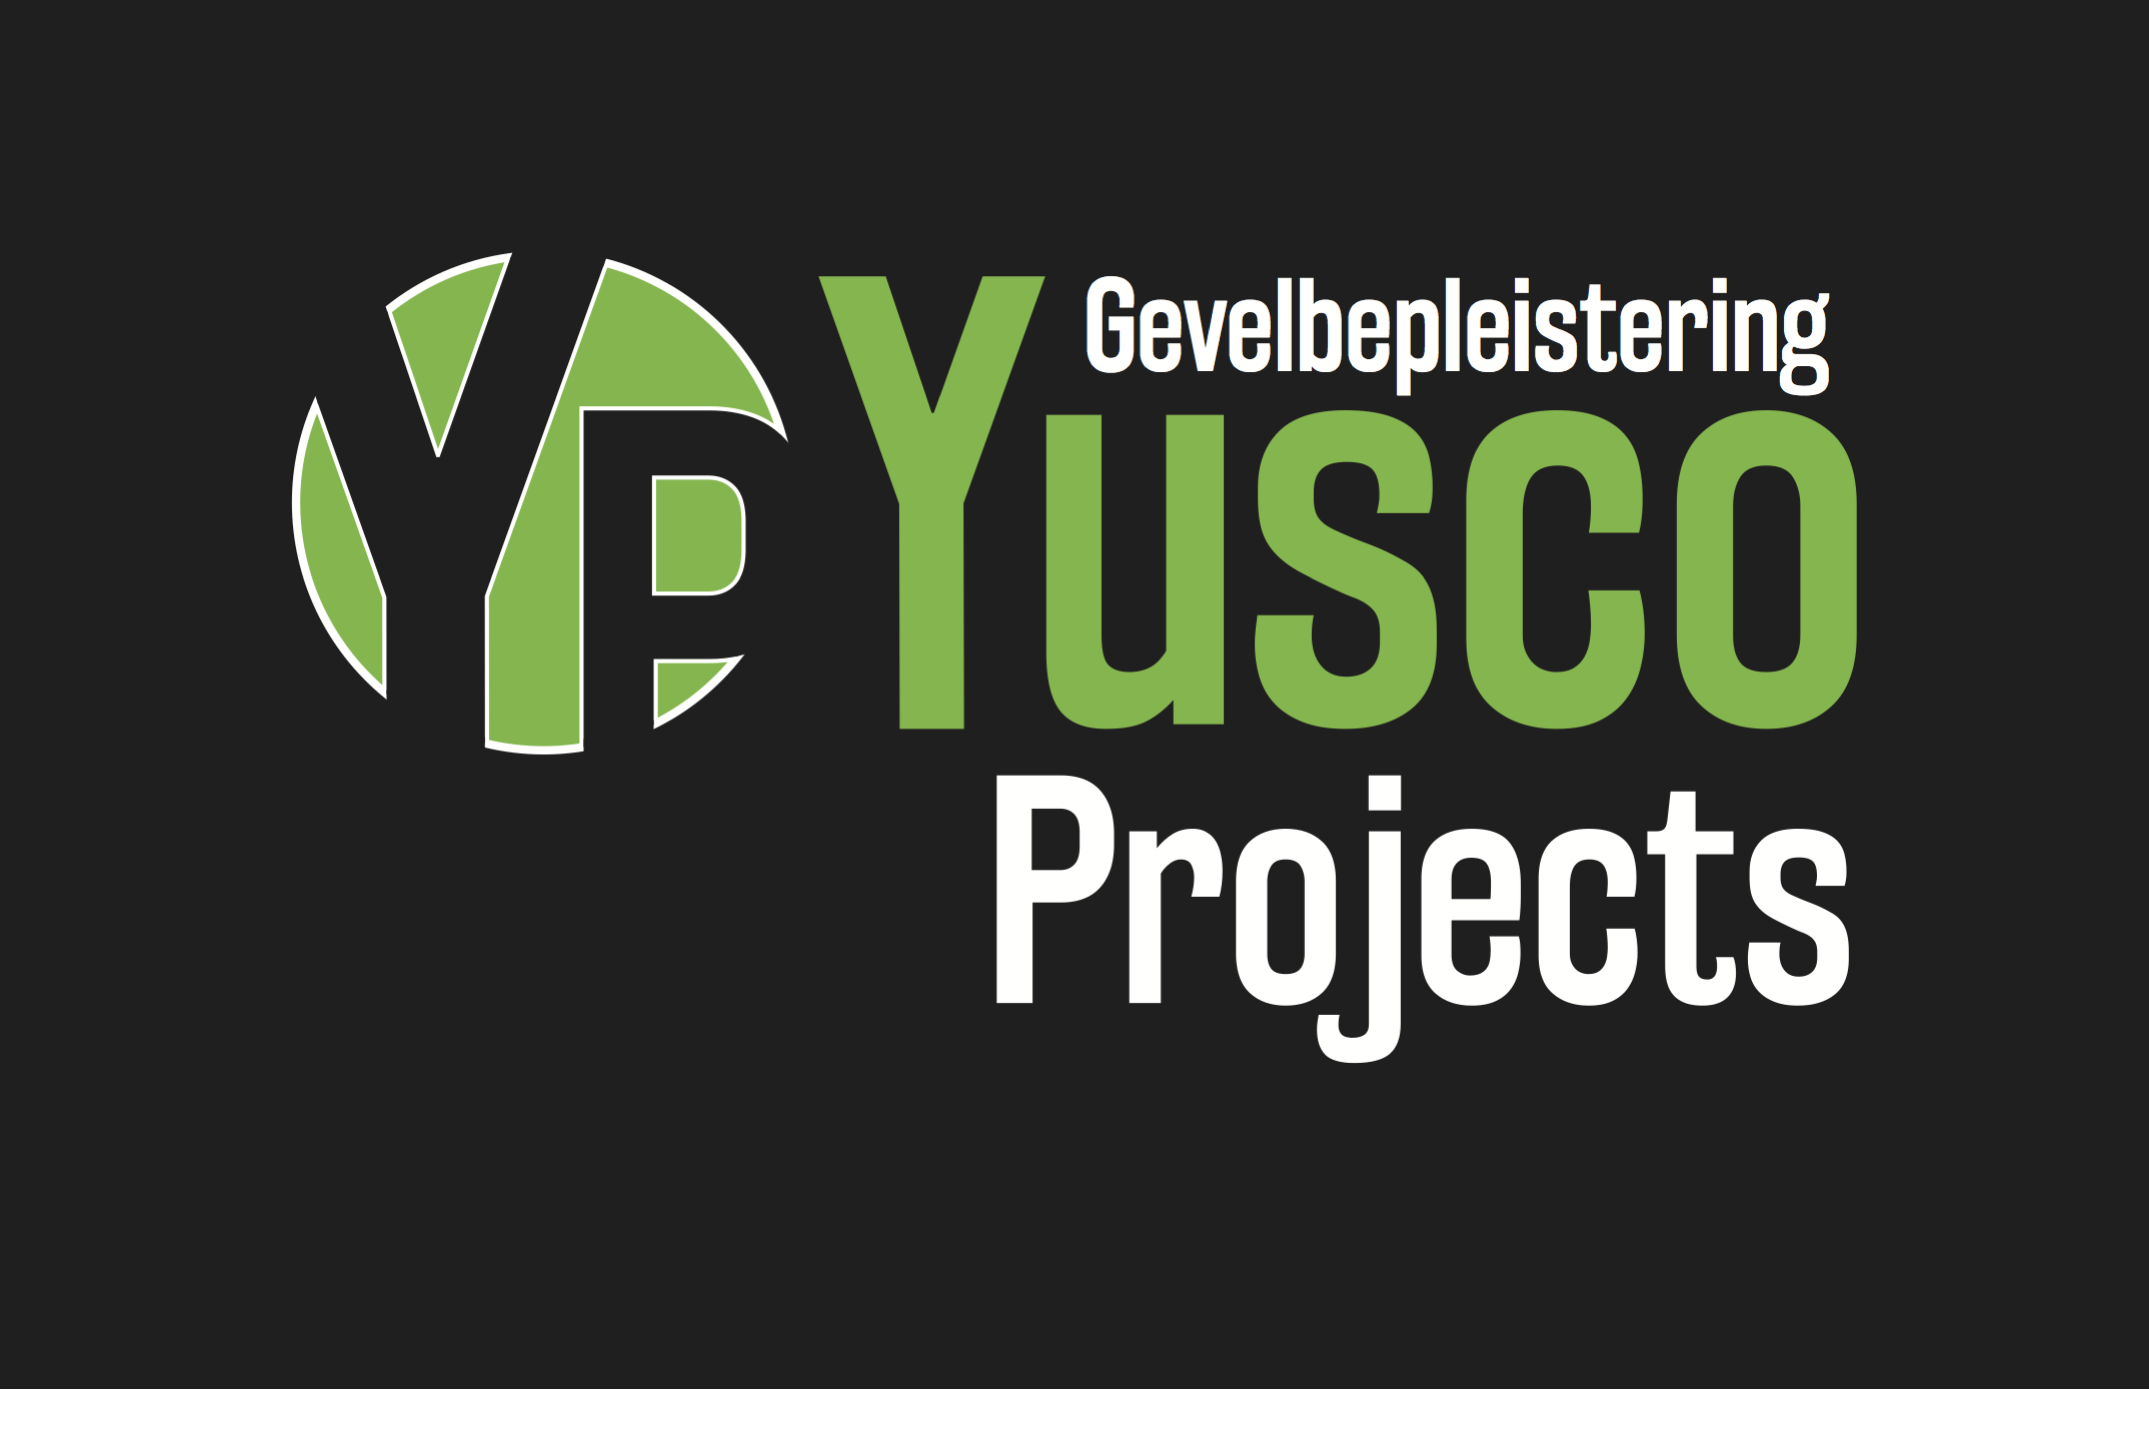 stukadoors Overmere Yusco Projects Gevelbepleistering